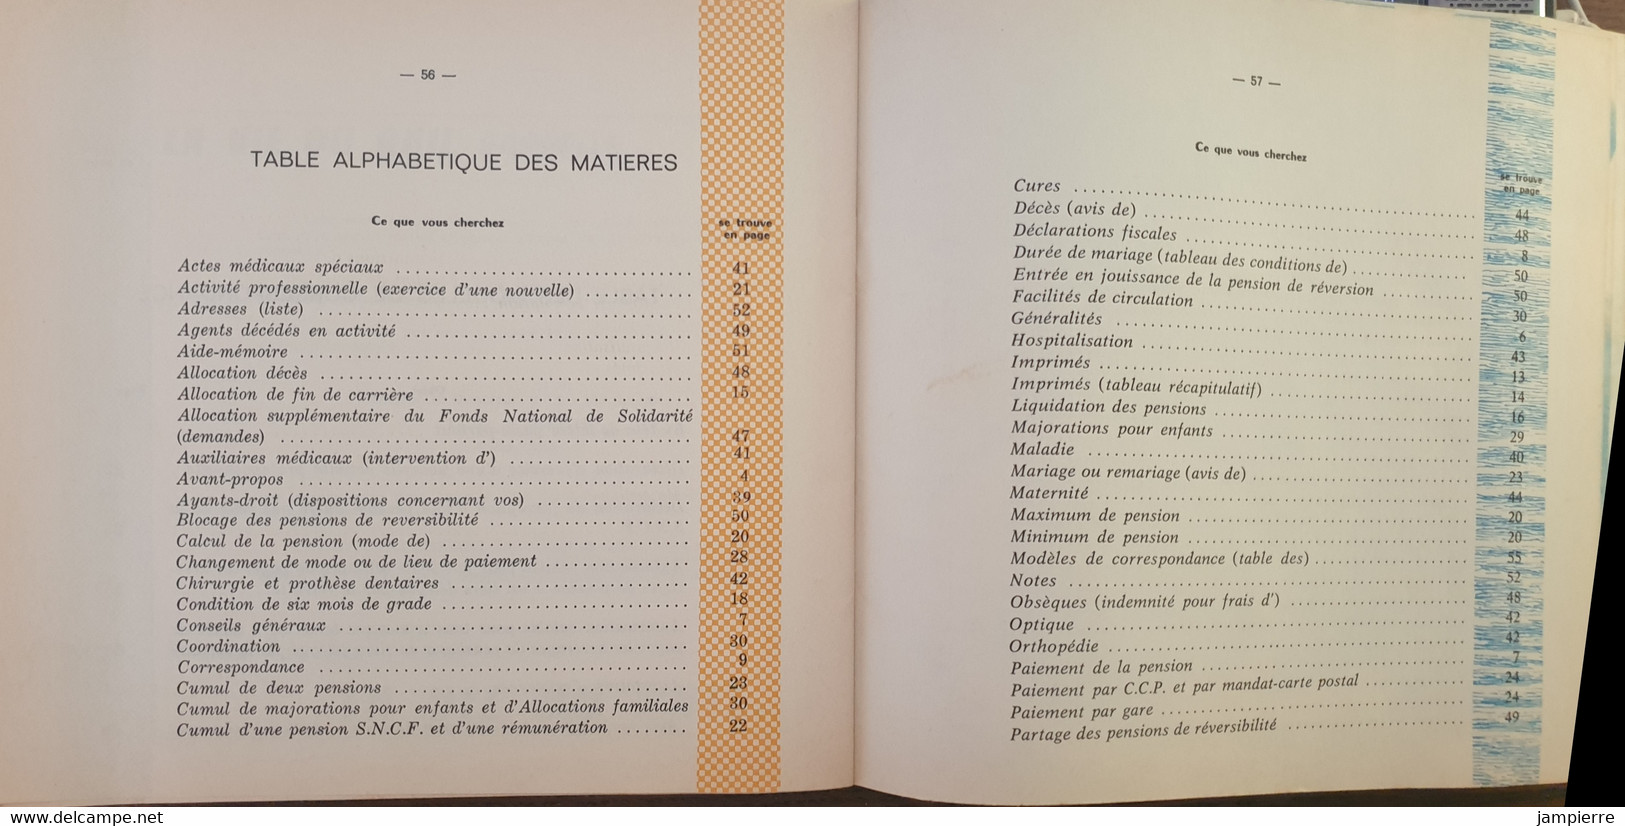 SNCF - Guide Du Retraité (1973) - 62 Pages - Spoorweg